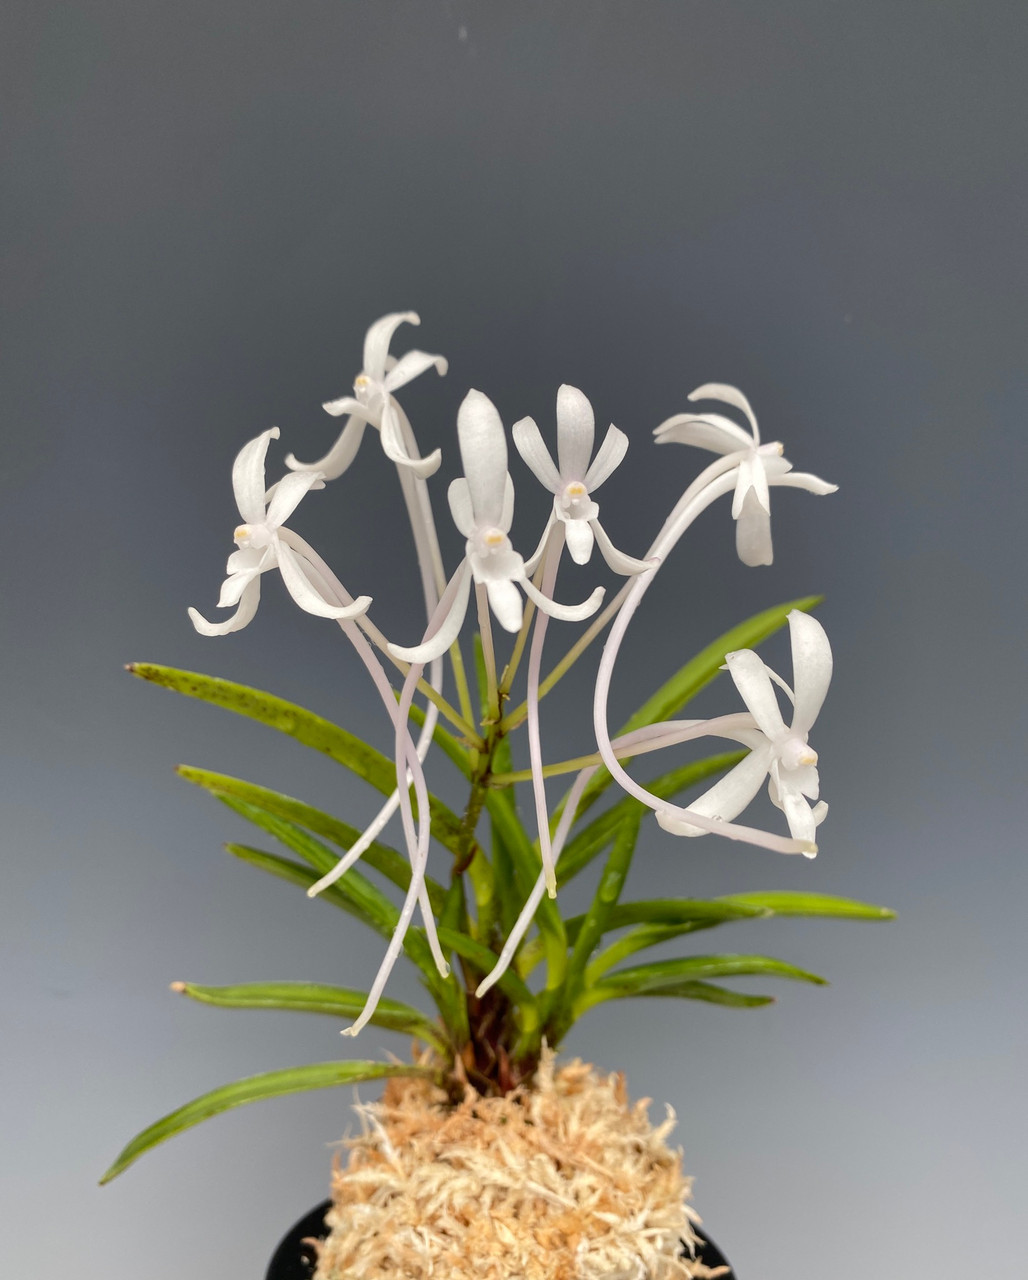 Neofinetia Orchid Care